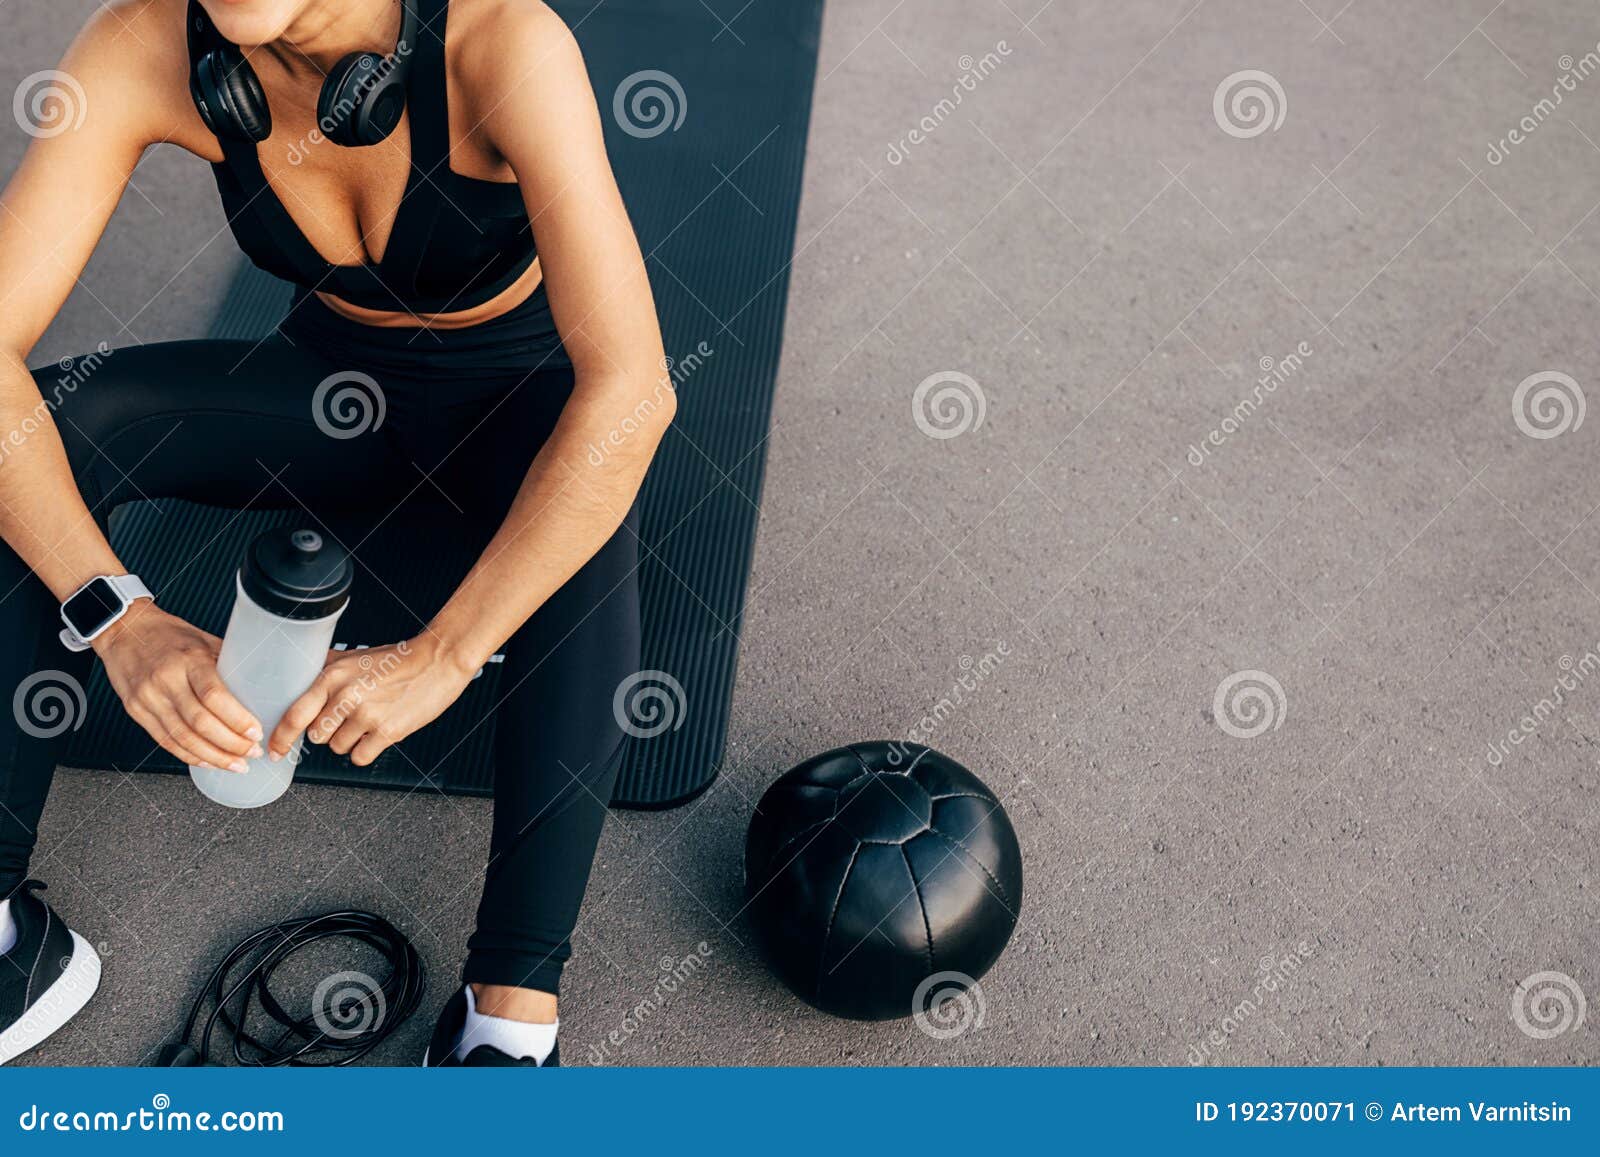 https://thumbs.dreamstime.com/z/mujer-de-fitness-irreconocible-sentada-sobre-una-alfombra-en-estado-f%C3%ADsico-y-sosteniendo-botella-agua-despu%C3%A9s-del-entrenamiento-192370071.jpg